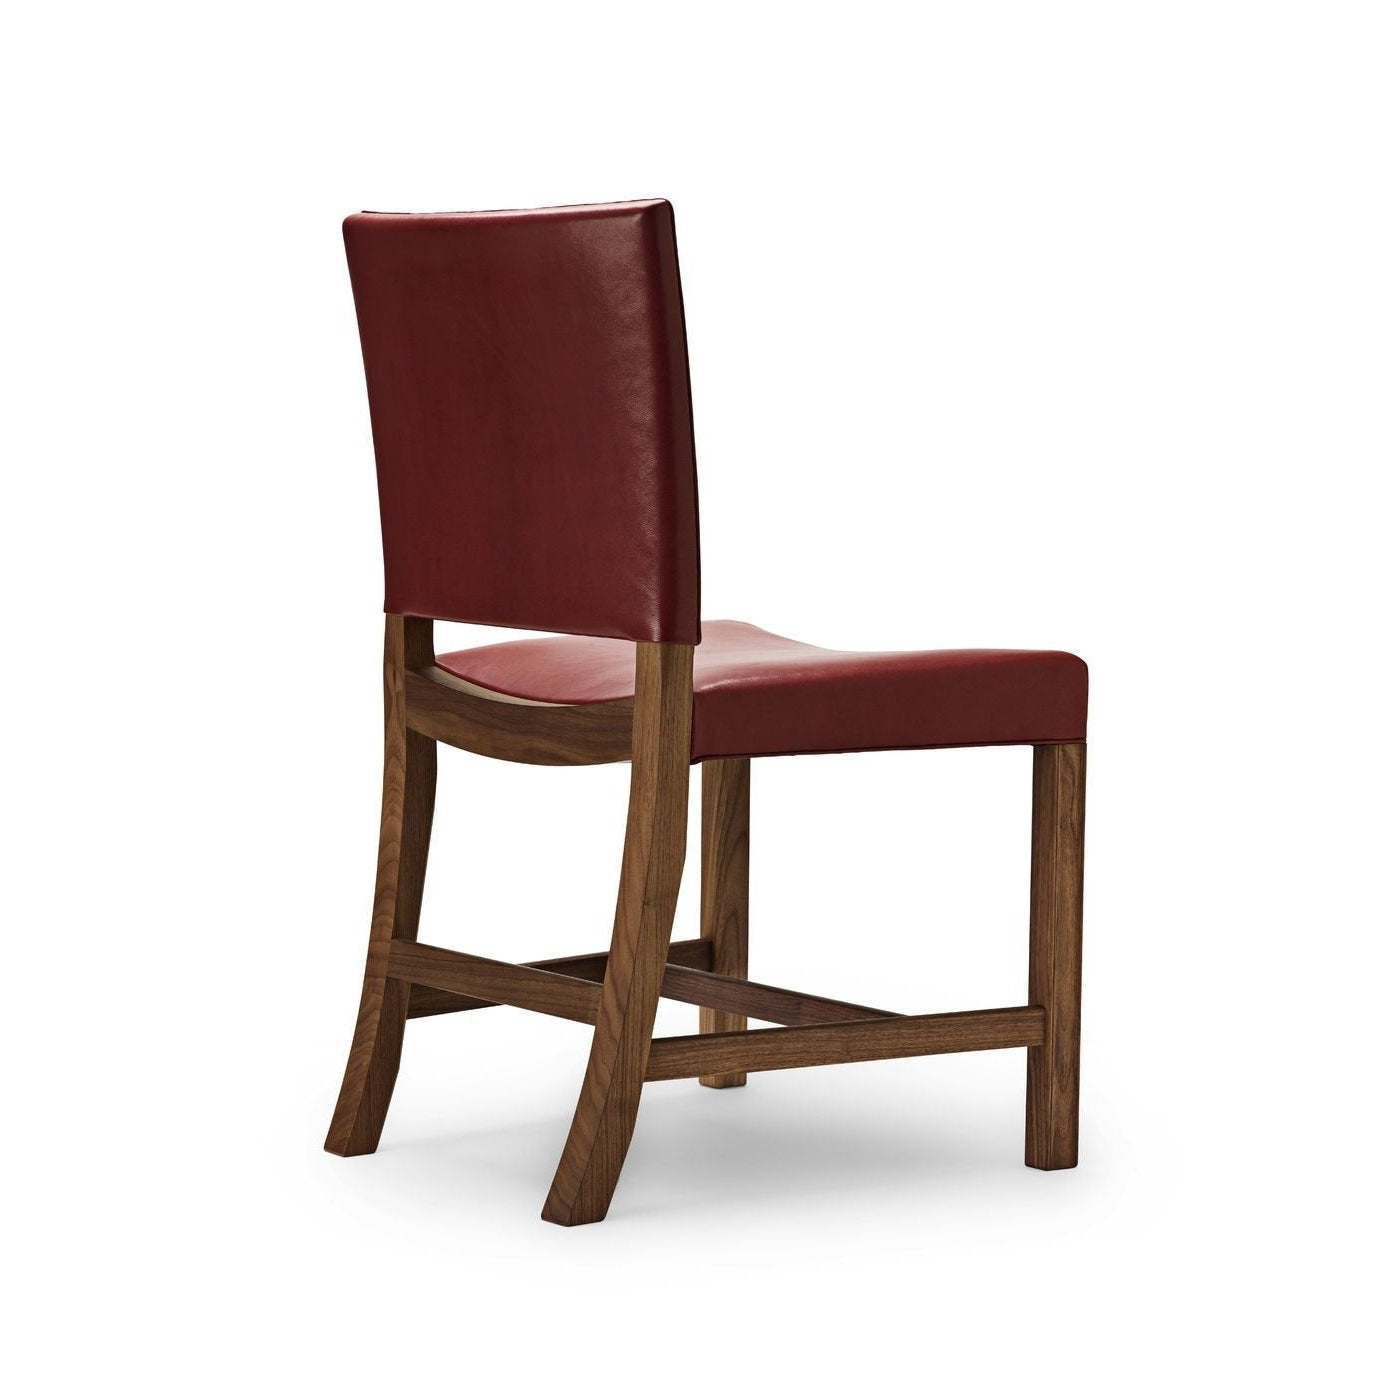 Carl Hansen KK47510 La chaise rouge, noix laquée / chèvre rouge